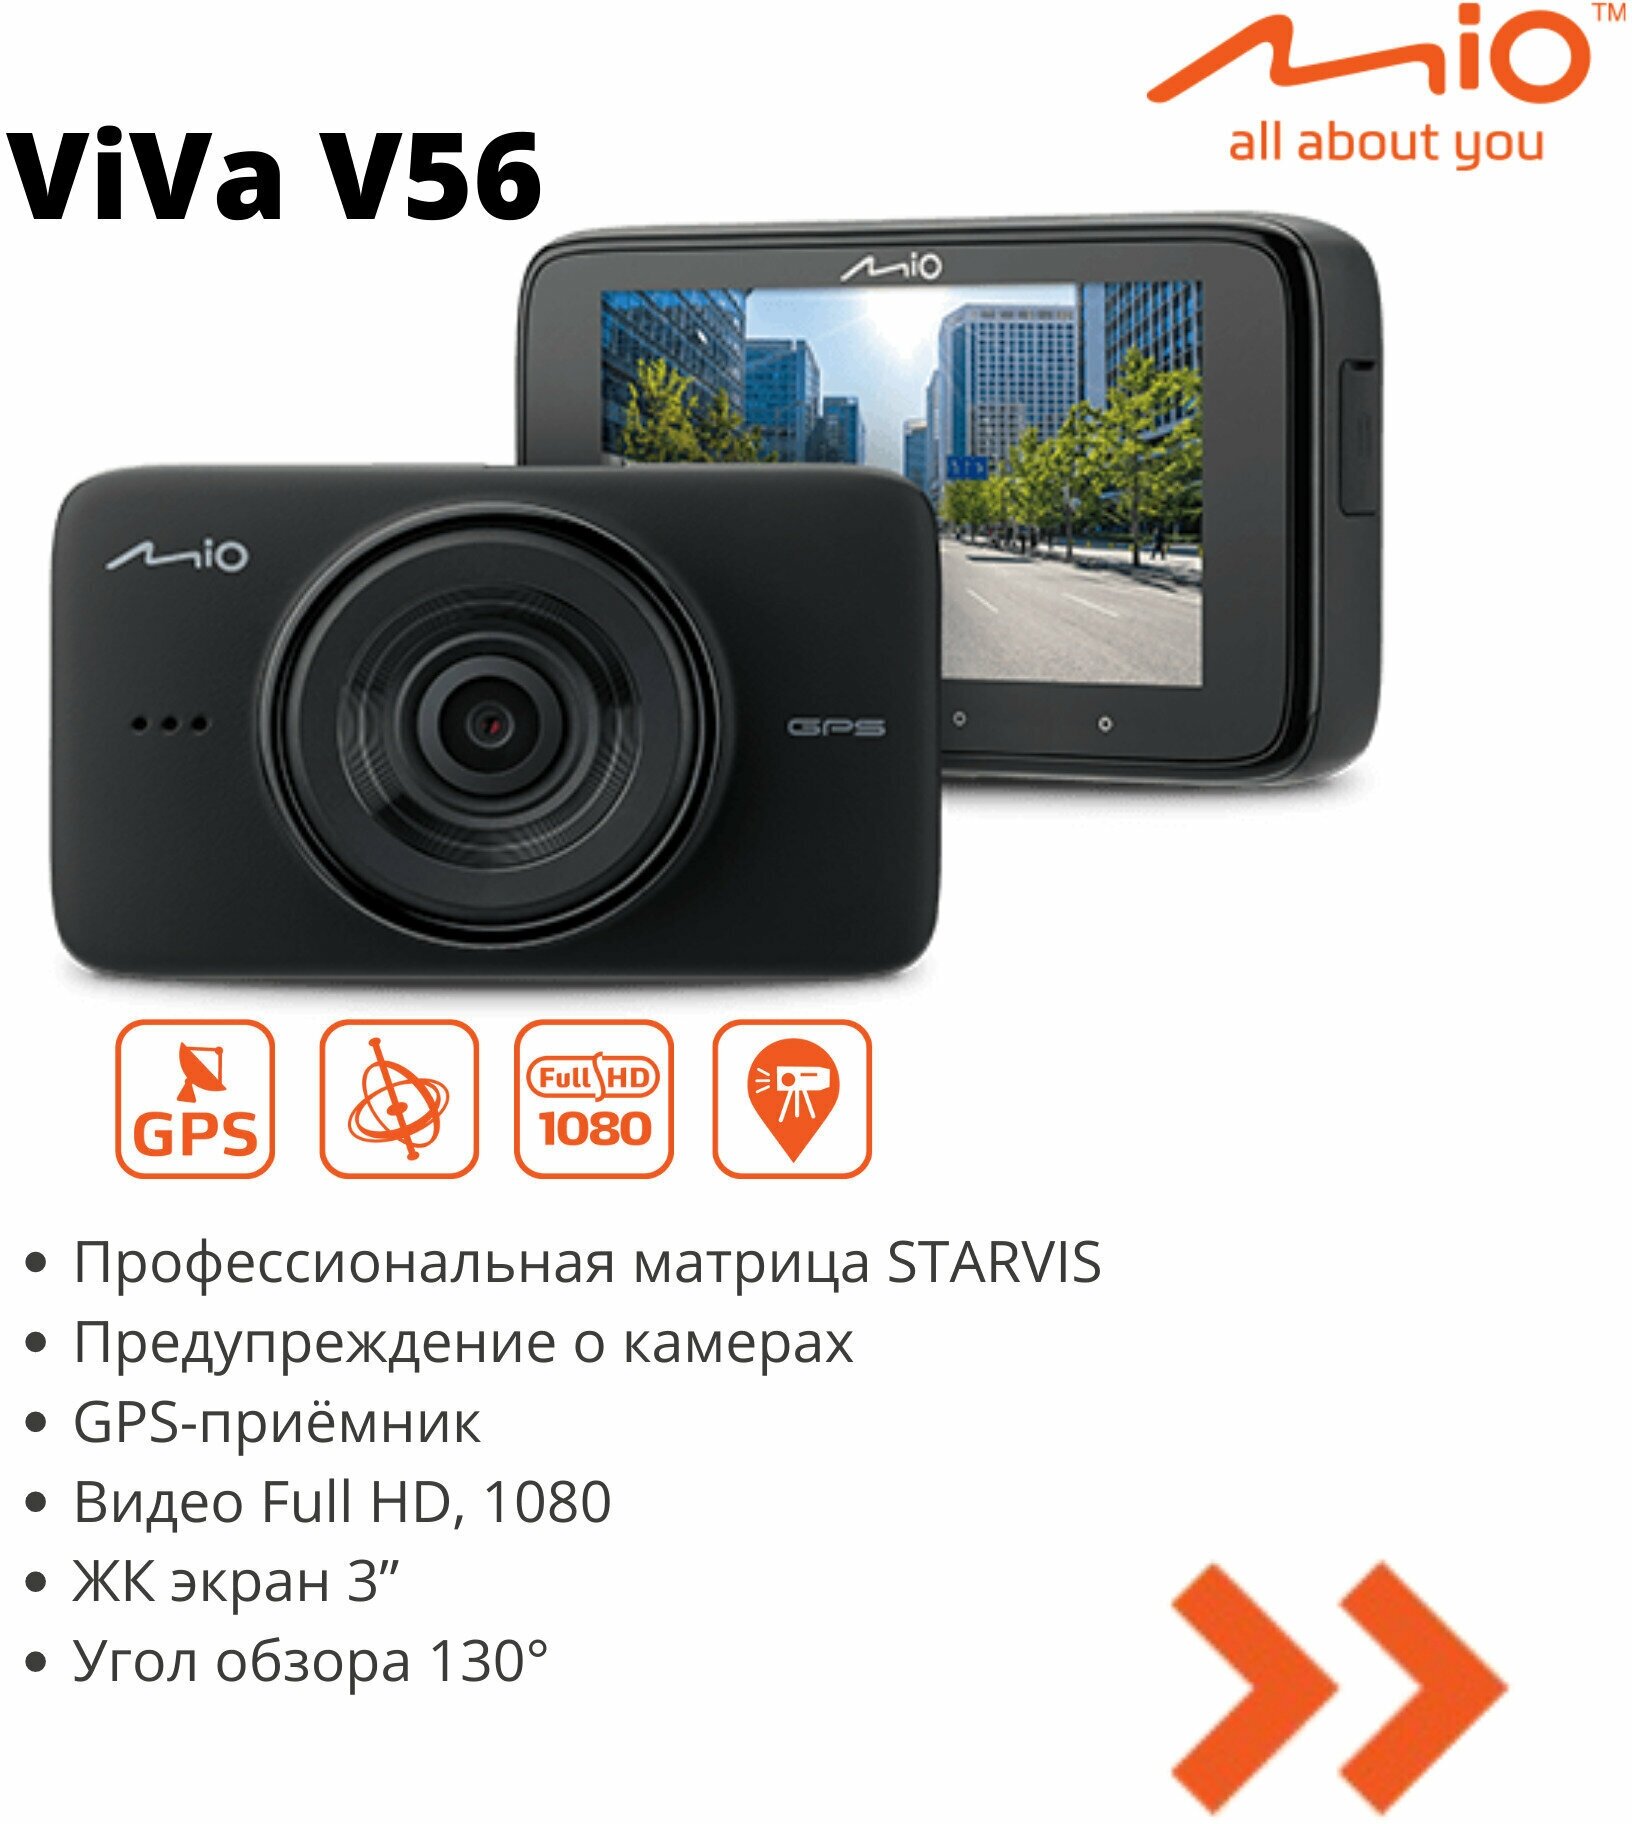 Видеорегистратор Mio ViVa V56 GPS